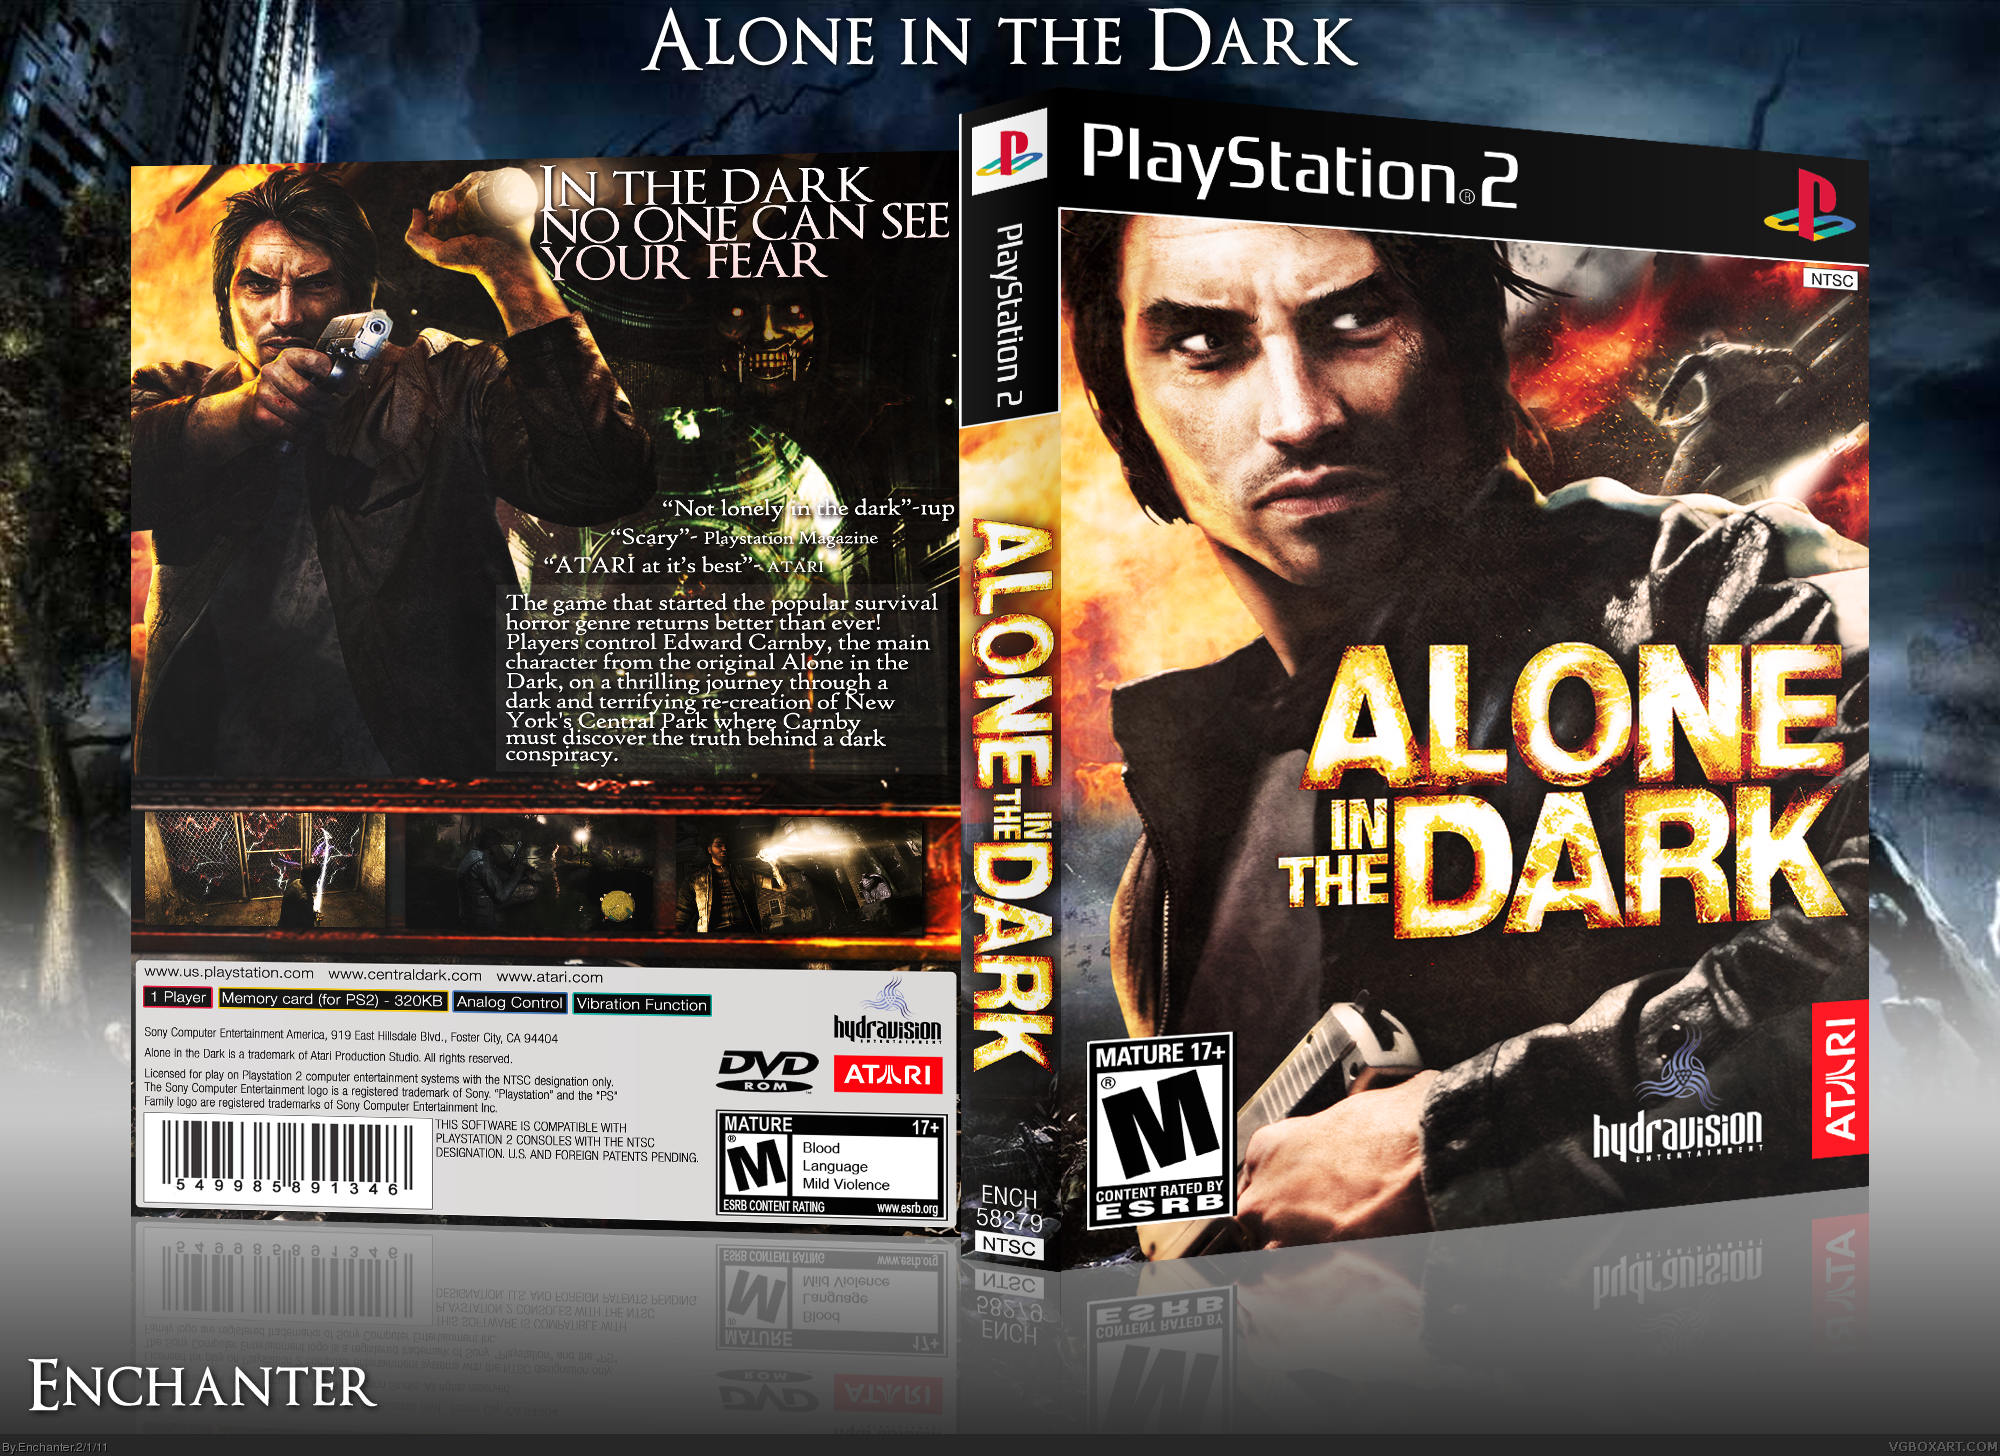 Alone in the Dark 4 ps2 коробка. Alone in the Dark 2008 Boxart. Alone in the Dark ps2 обложка. Alon in the Dark на плейстейшен 2. Alone in the dark ps4